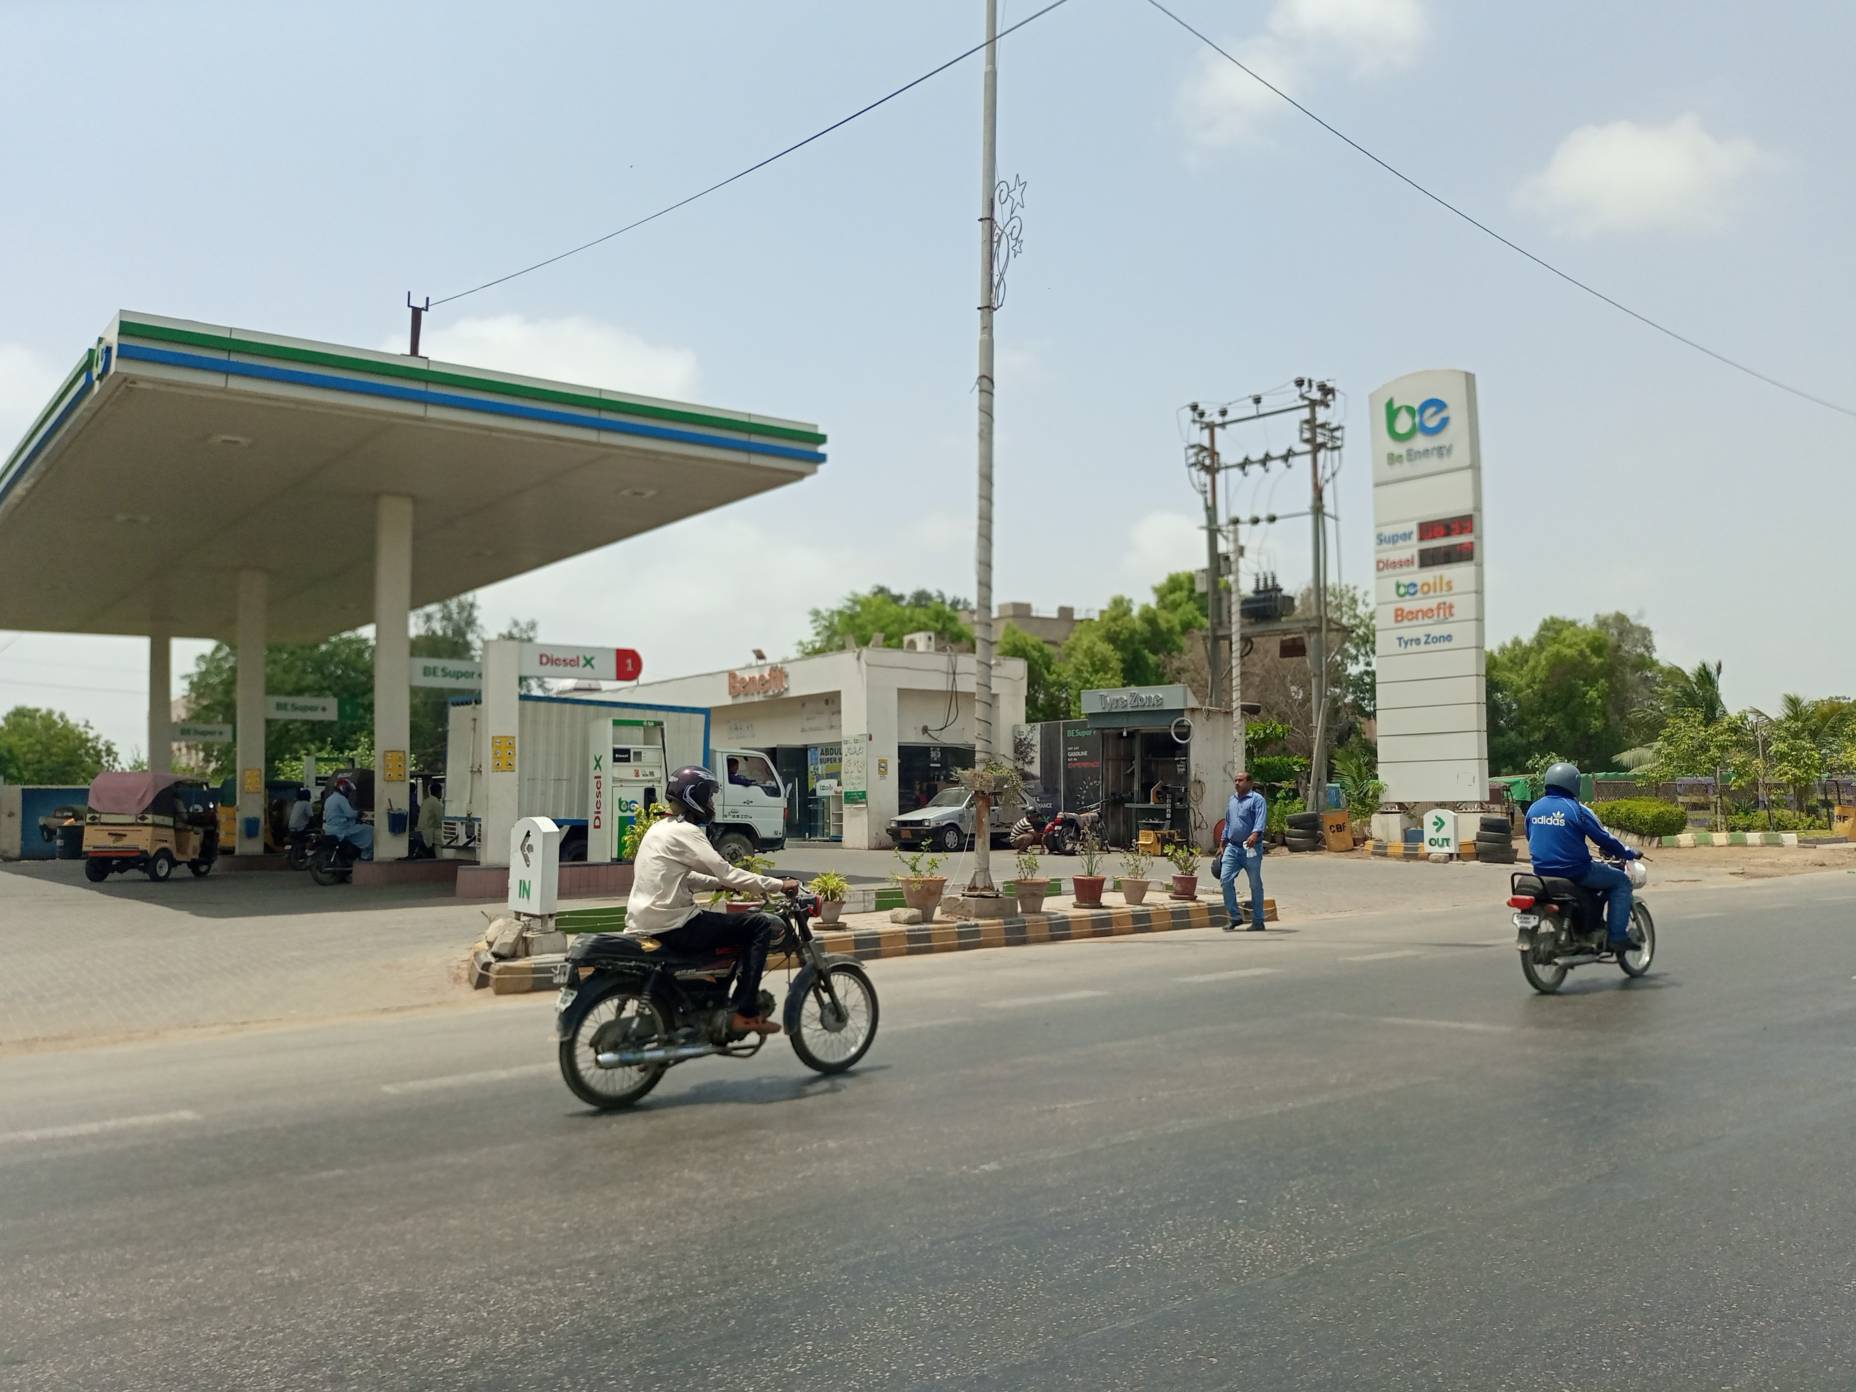 Petrol price in Pakistan